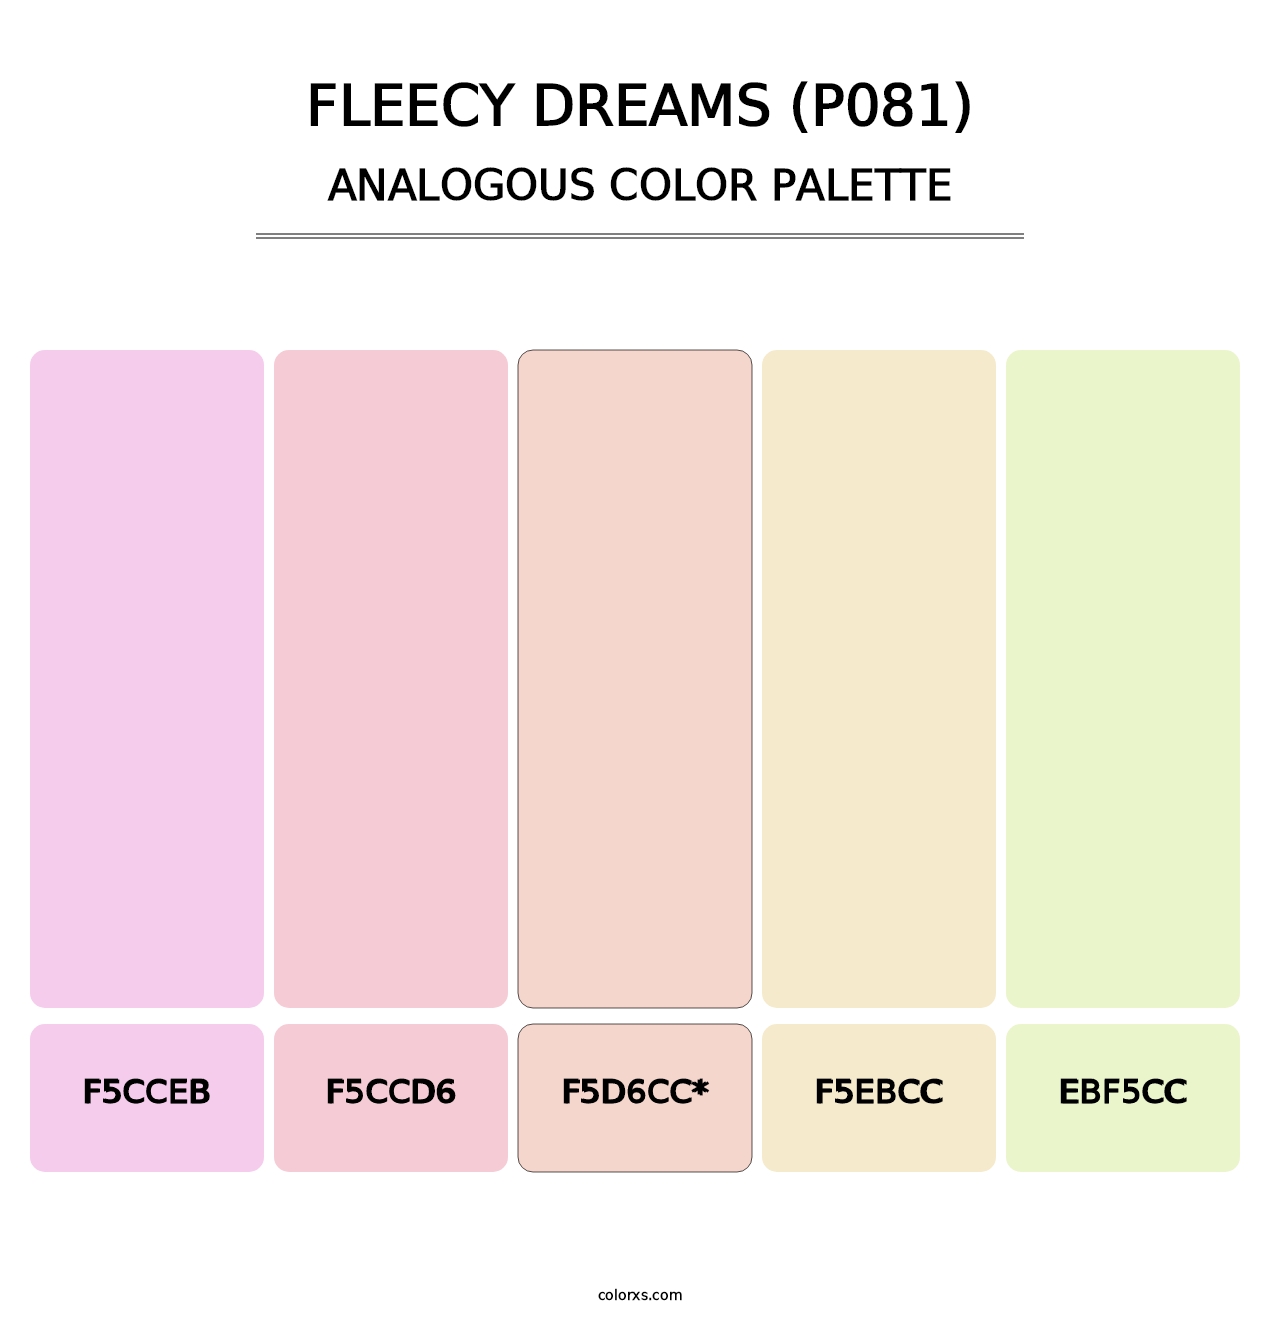 Fleecy Dreams (P081) - Analogous Color Palette